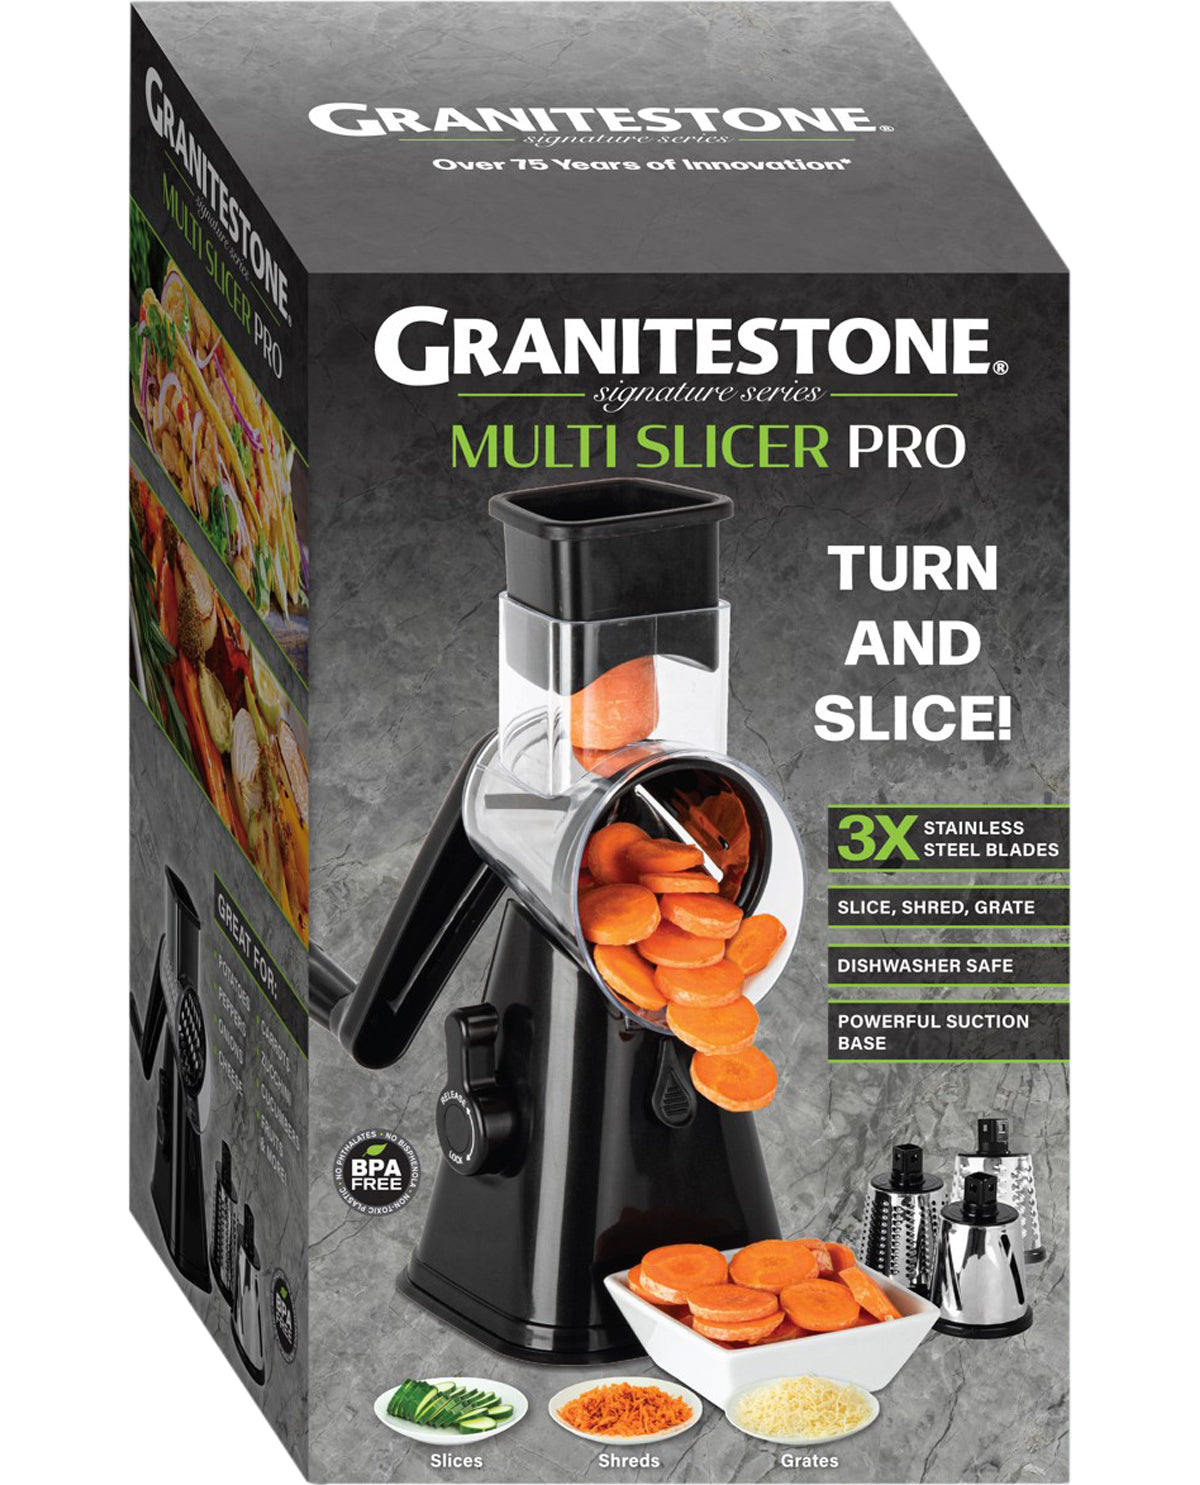 Granitestone Multi-Slicer Pro